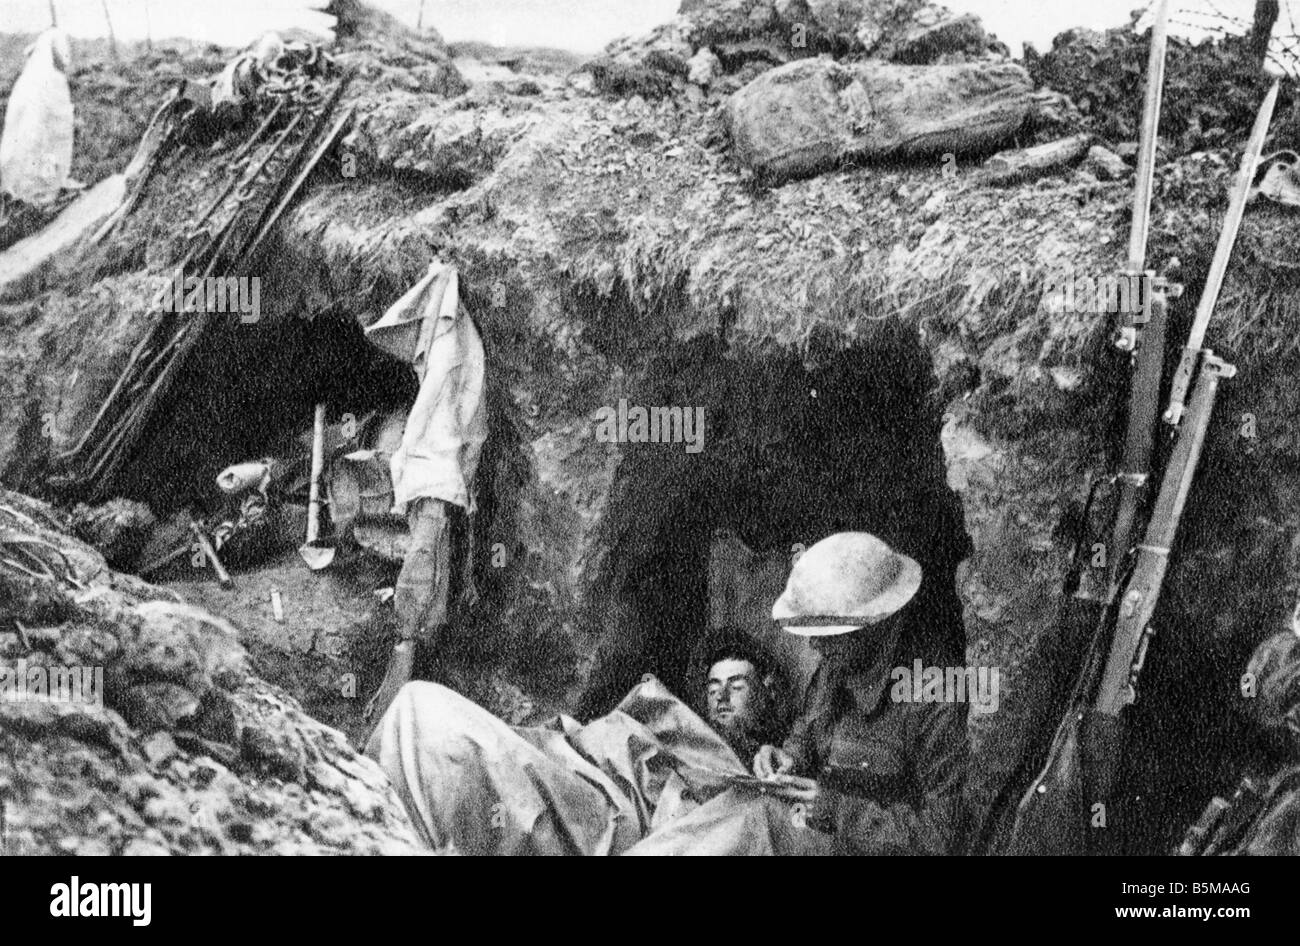 Britische Soldaten im Graben WWI 1915 Geschichte Weltkrieg Western Front Trench Warfare britische Soldaten in einem Graben Foto c 1915 Stockfoto